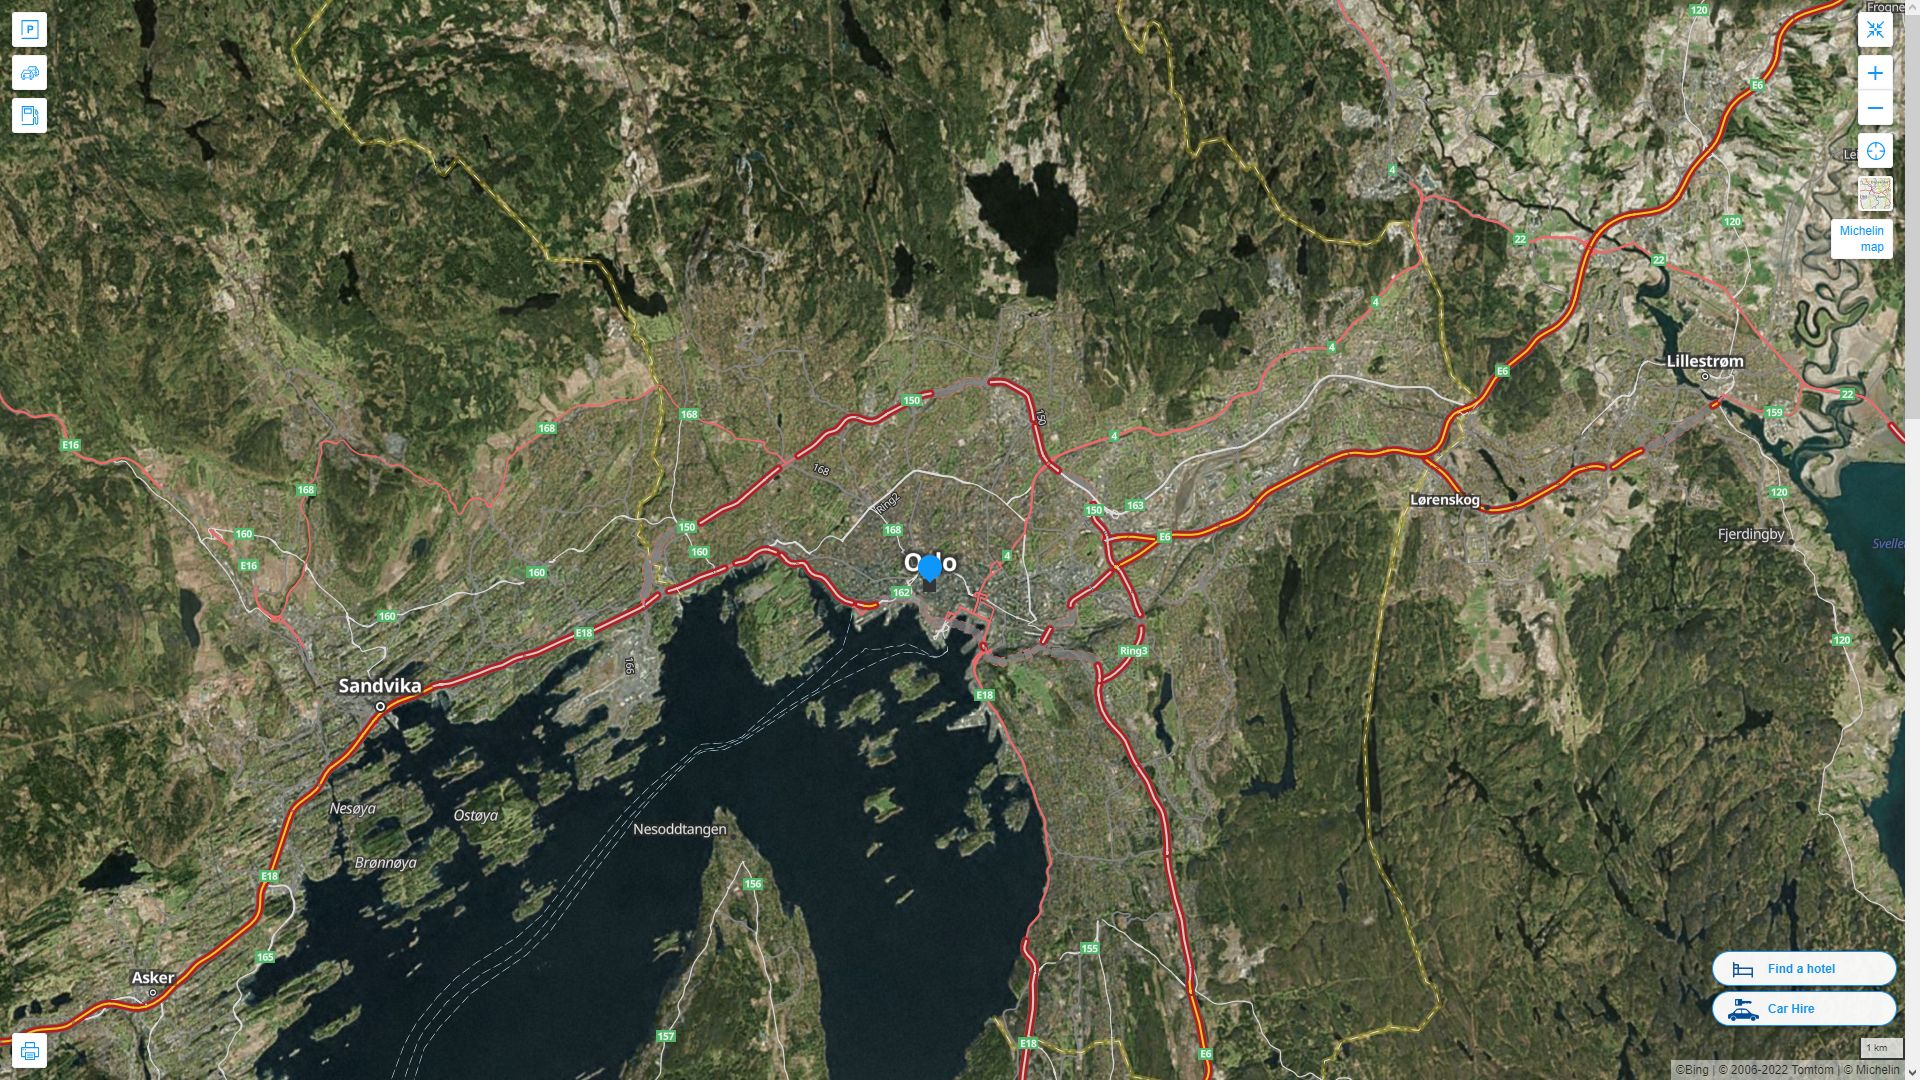 Oslo Norvege Autoroute et carte routiere avec vue satellite